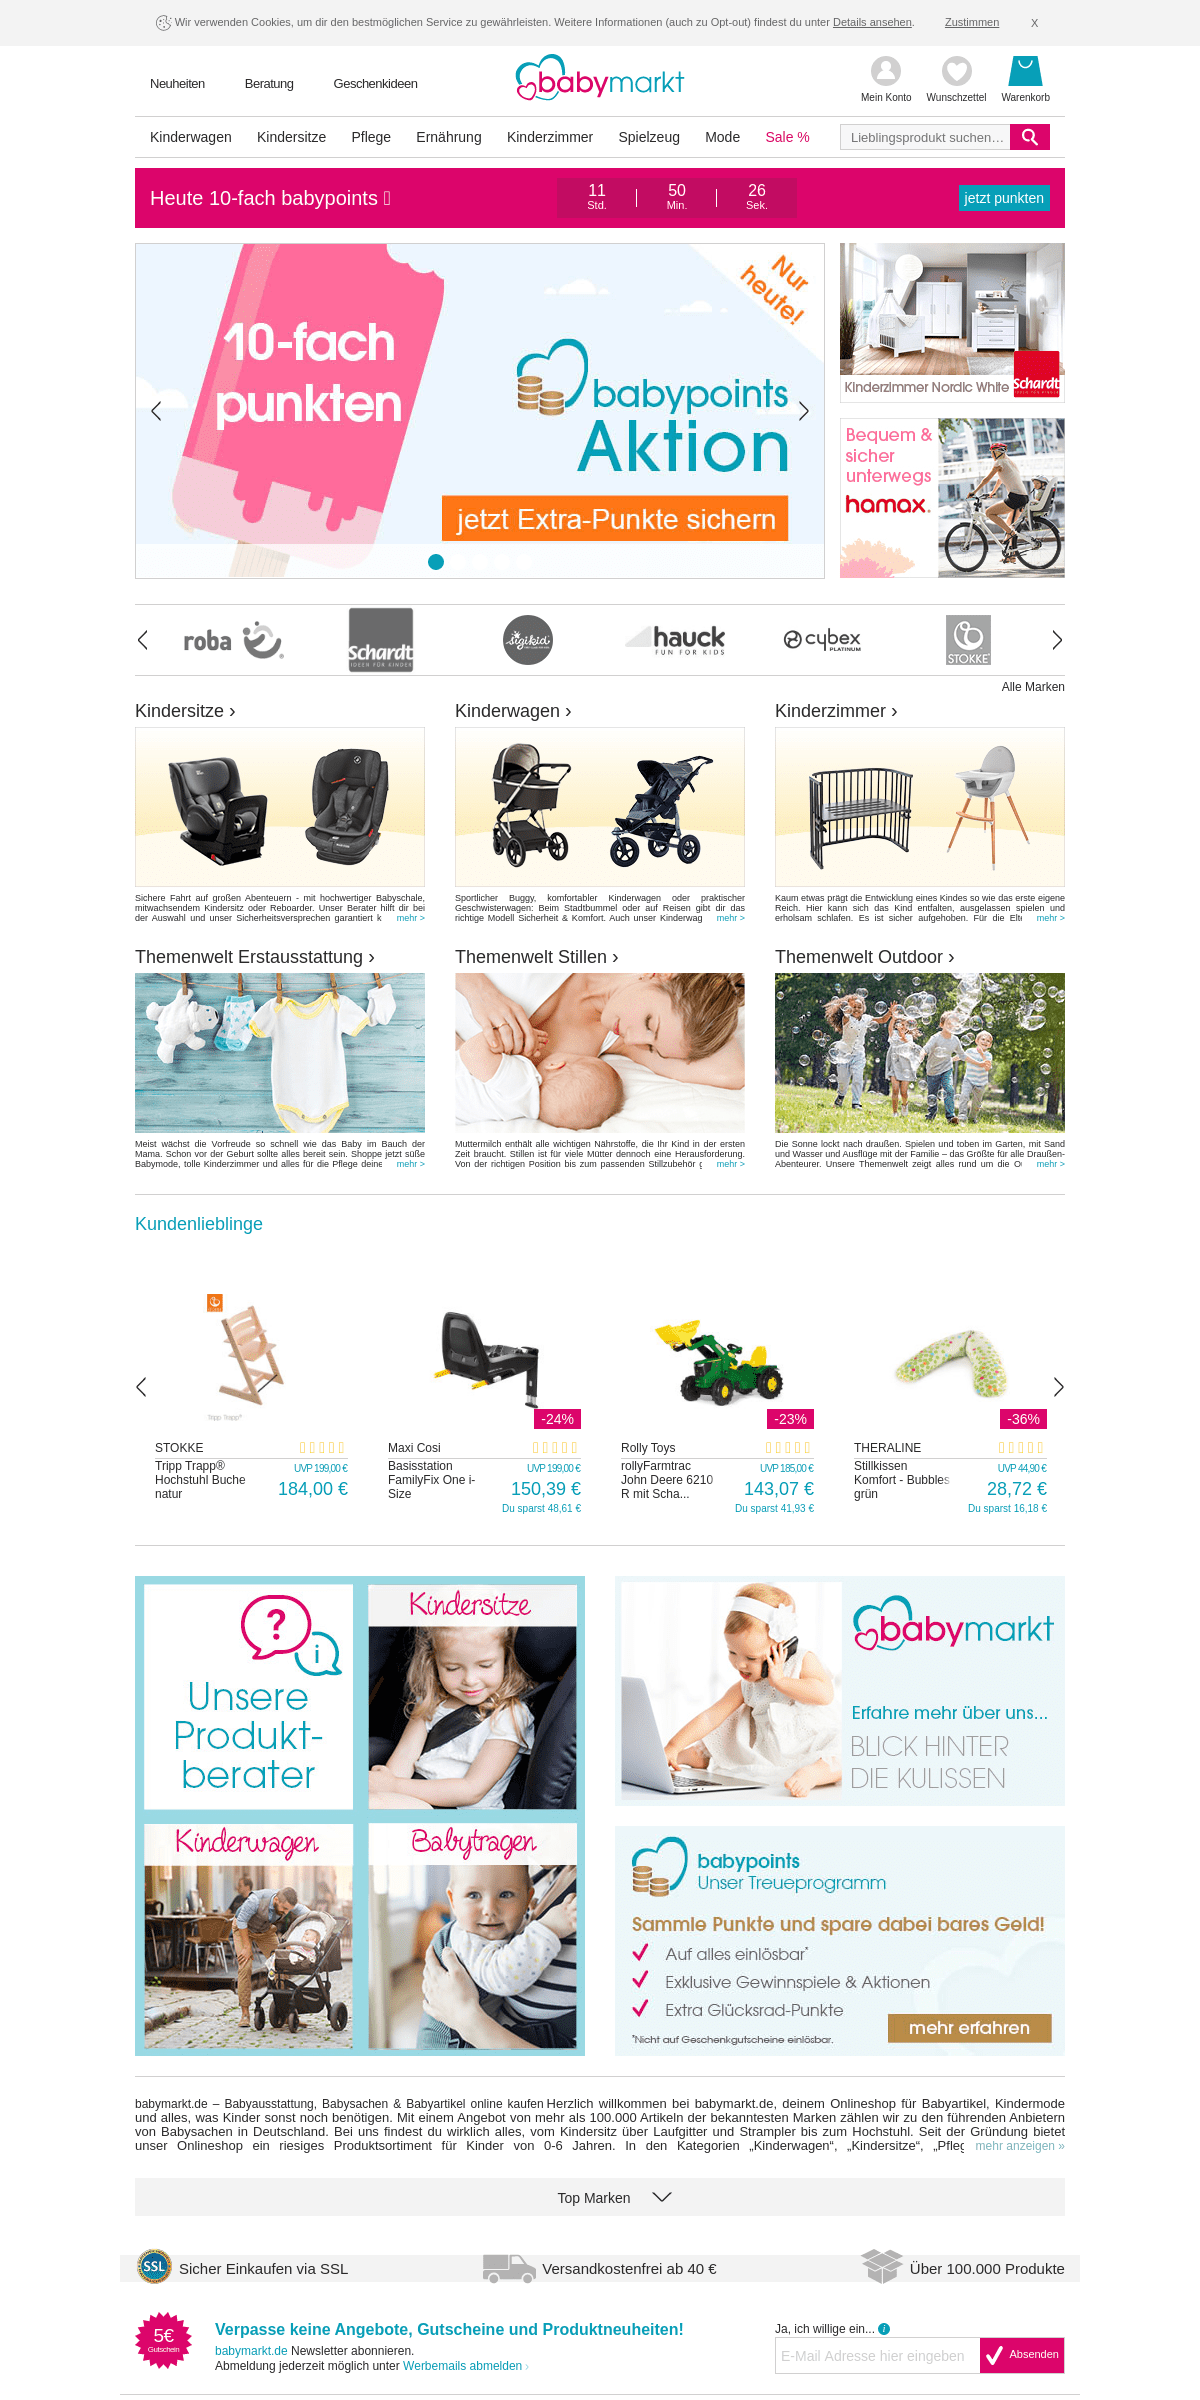 A complete backup of babymarkt.com